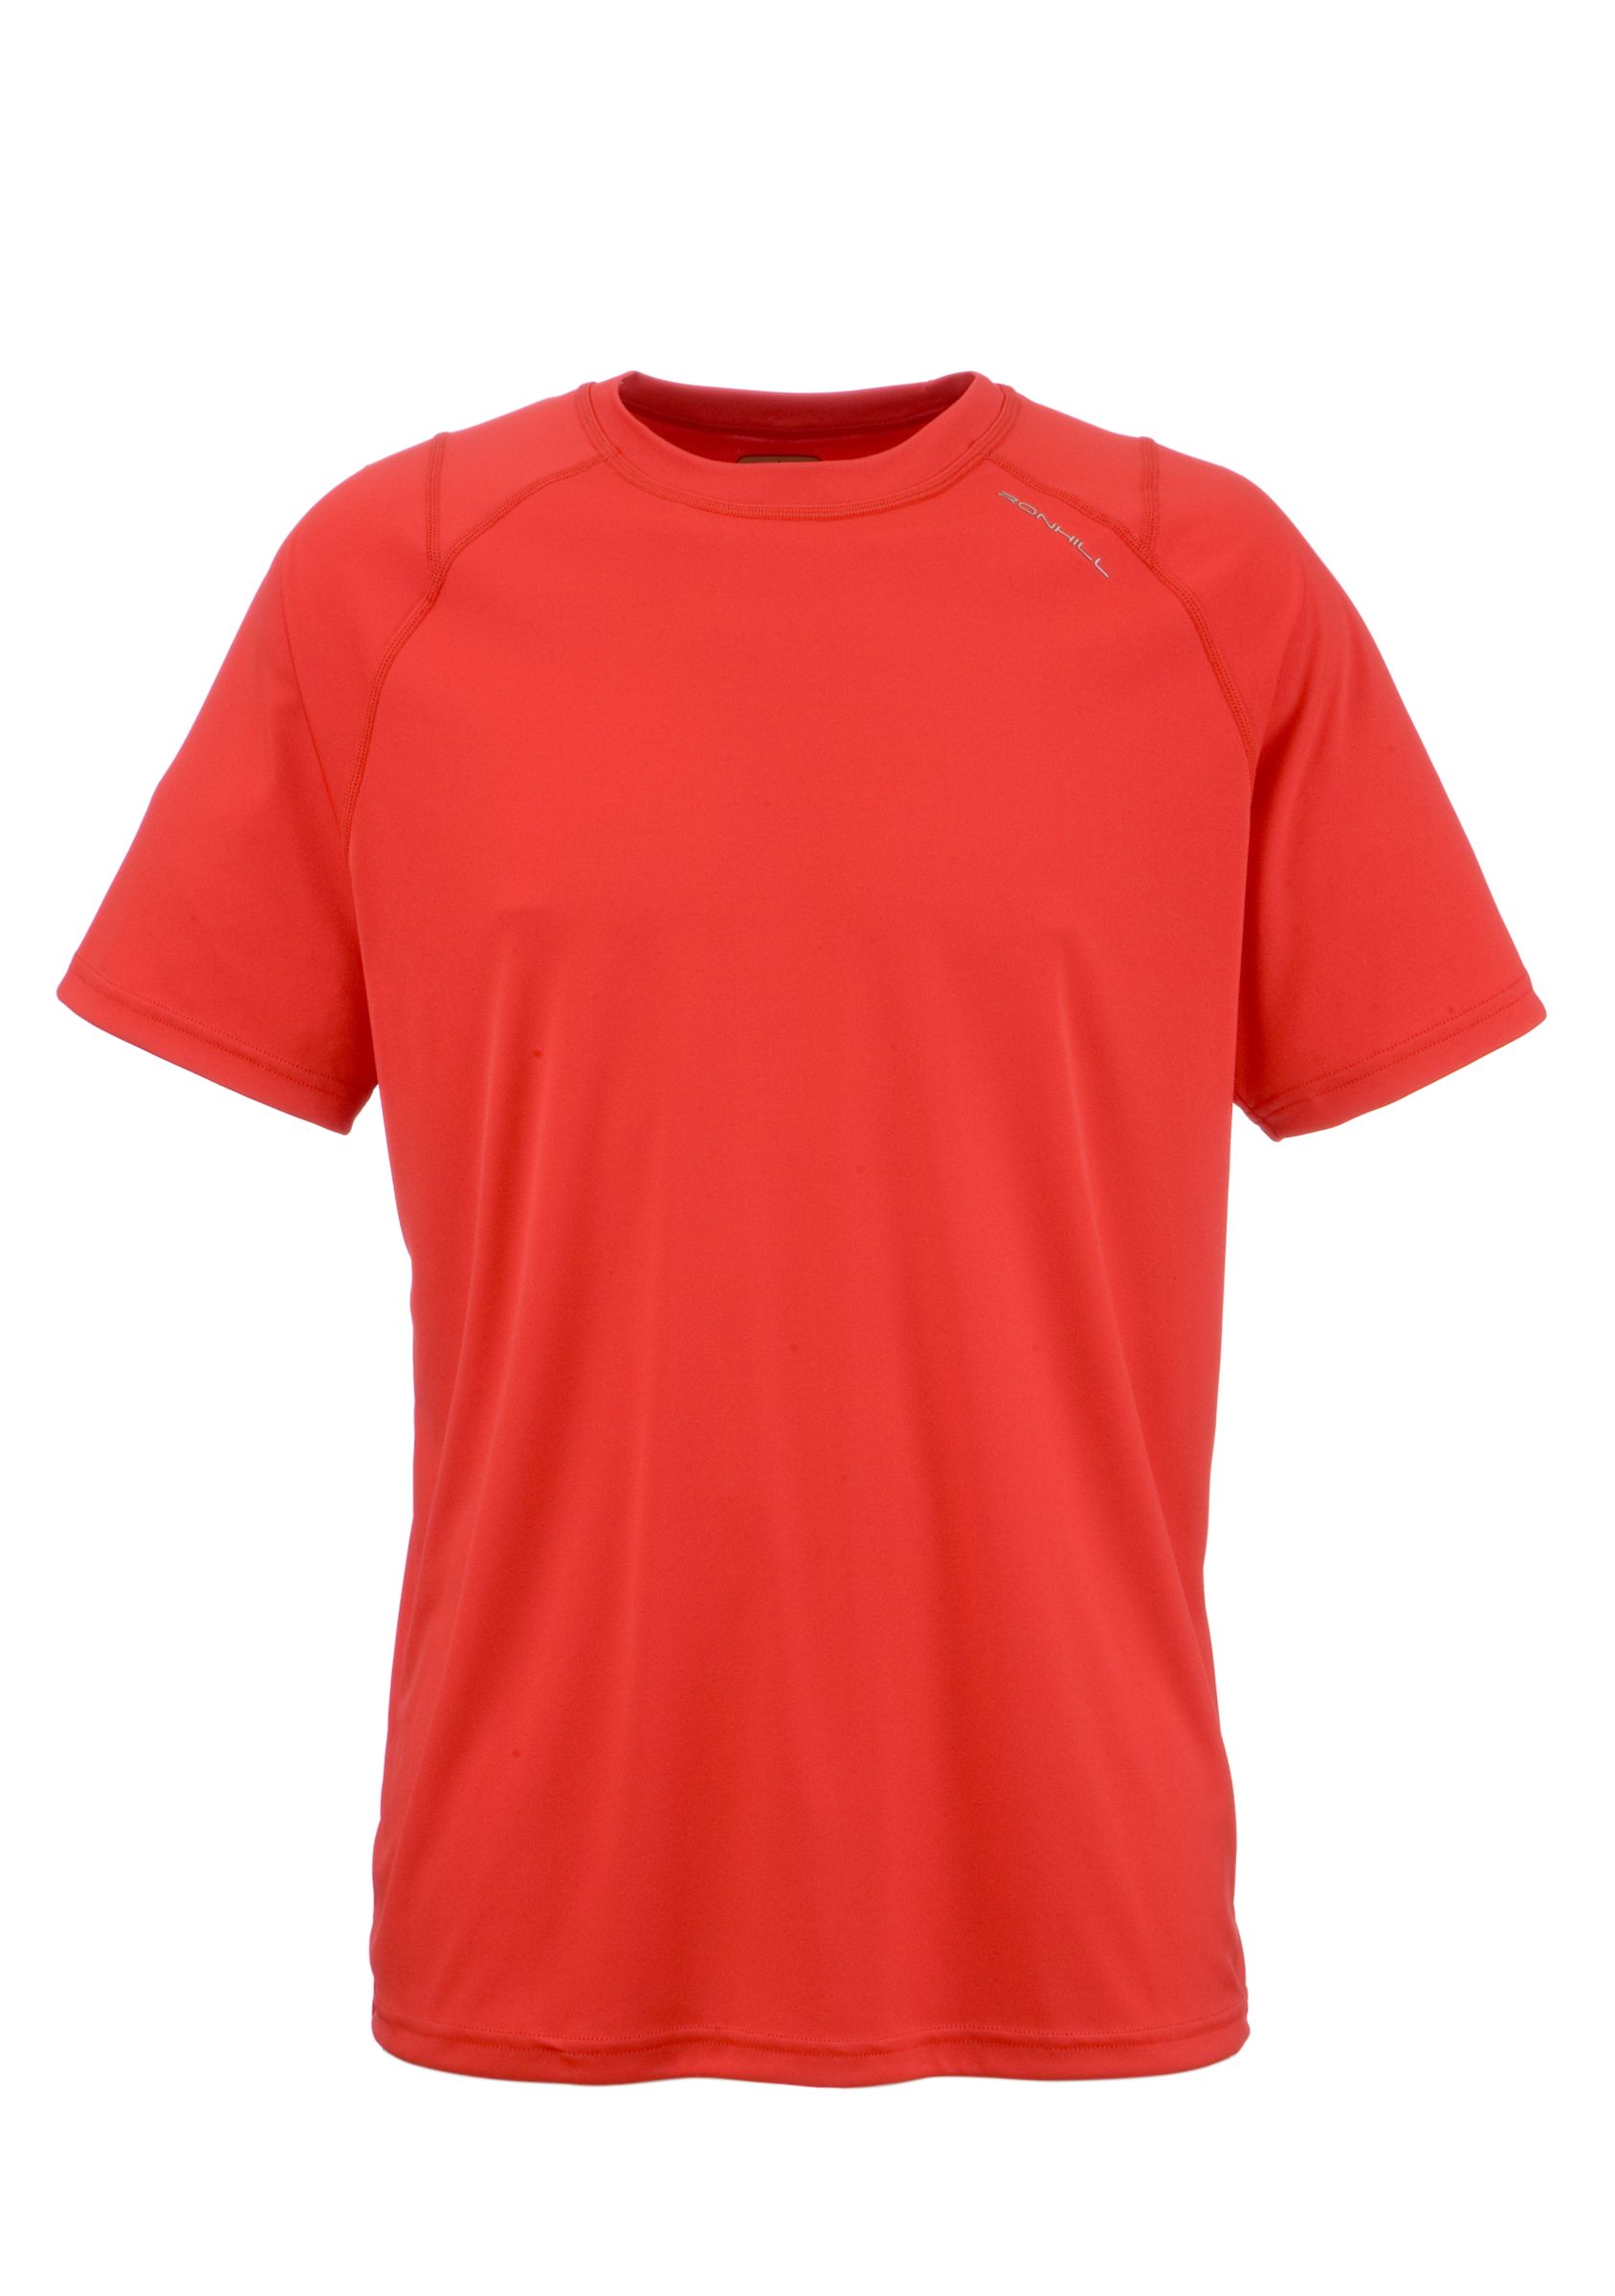 Ronhill Advance Short Sleeve Pure T-Shirt, Fire